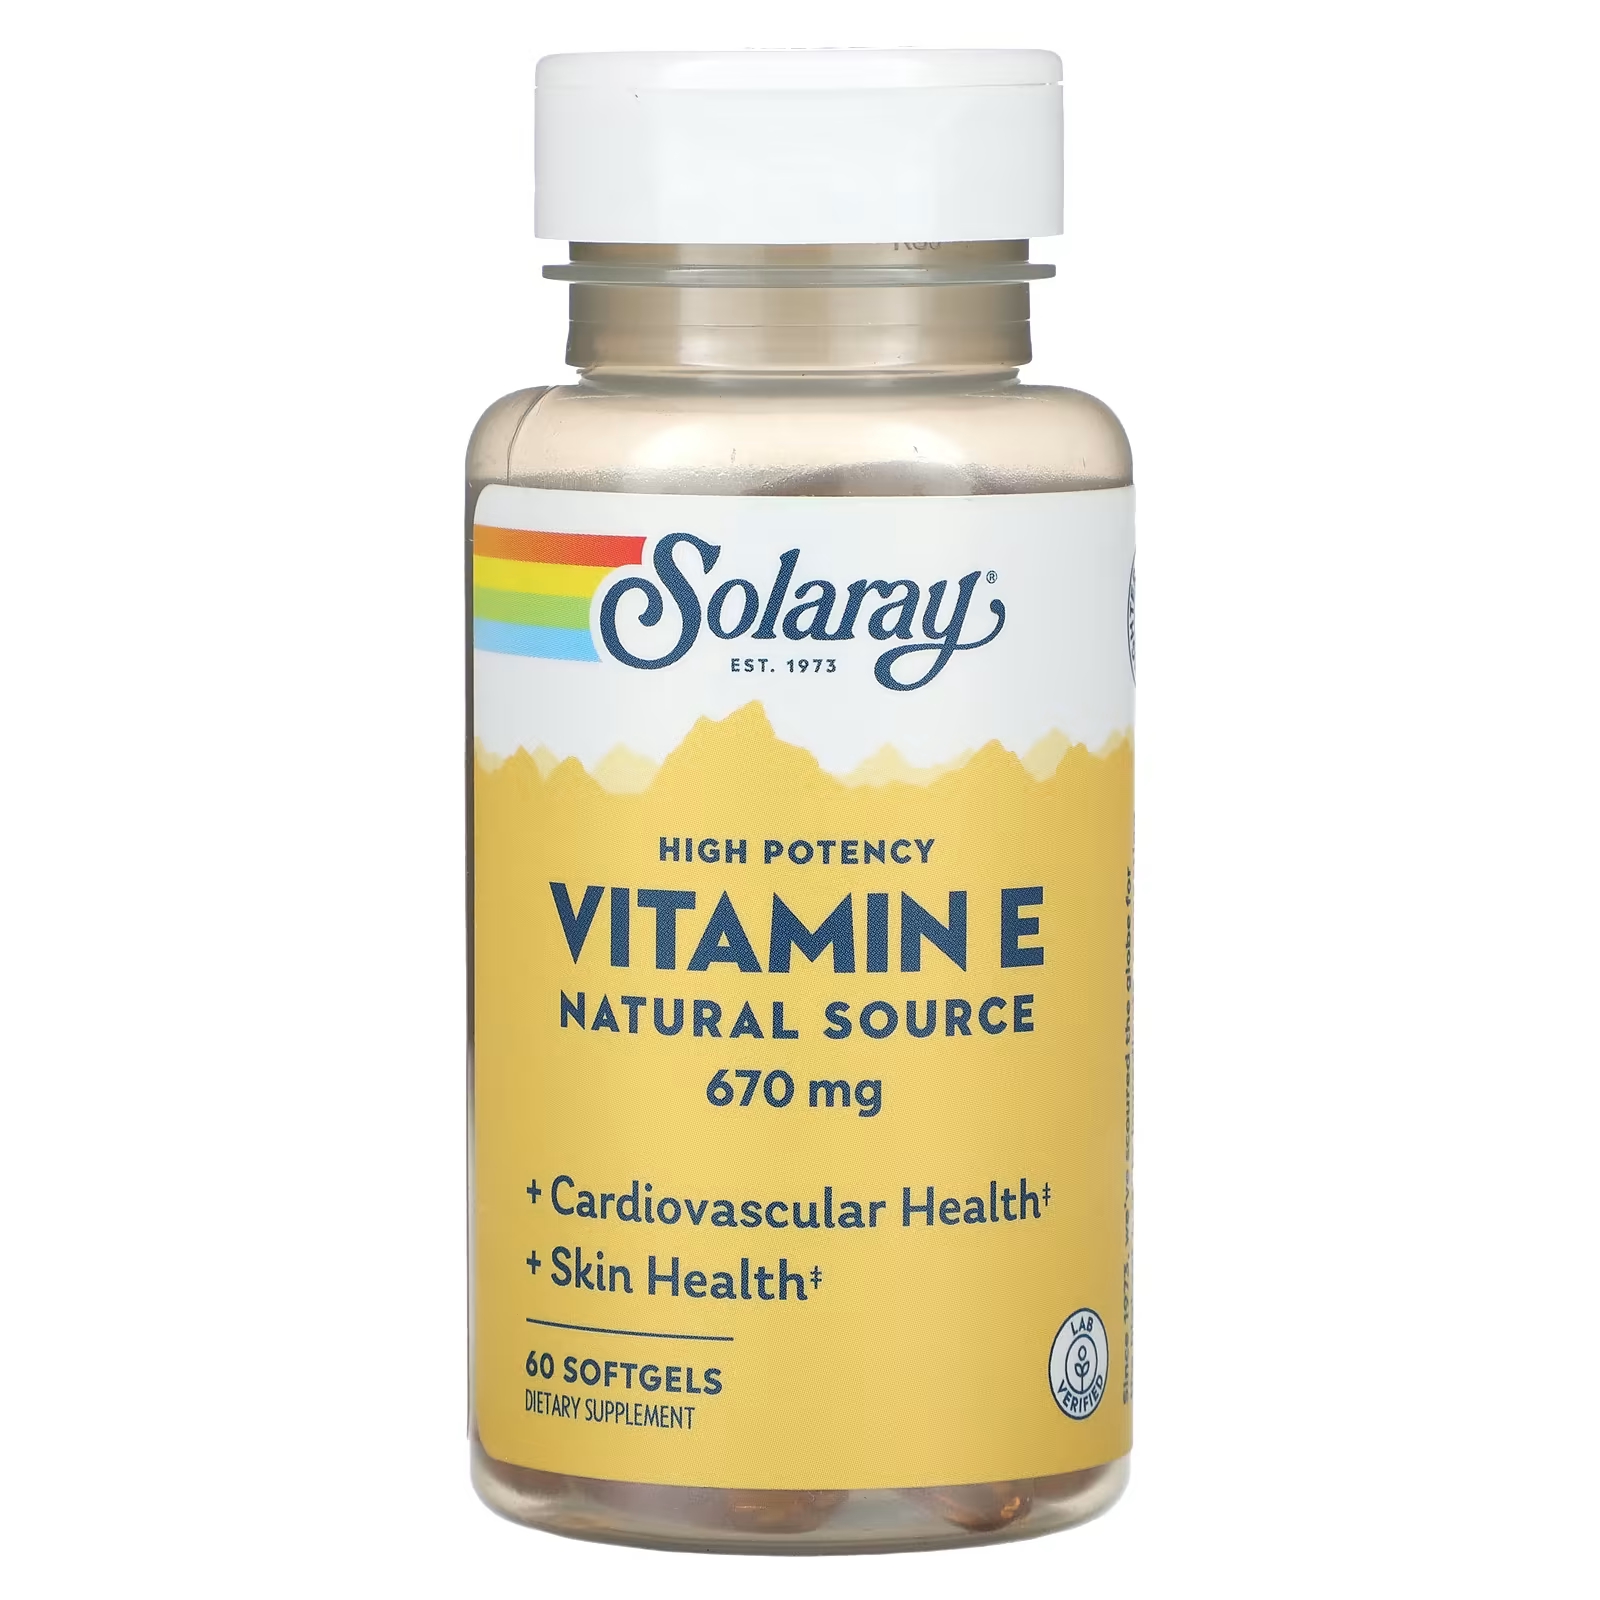 Solaray Витамин Е из природного источника, высокая эффективность, 670 мг, 60 мягких таблеток solaray витамин e натуральный источник высокая эффективность 670 мг 60 мягких таблеток